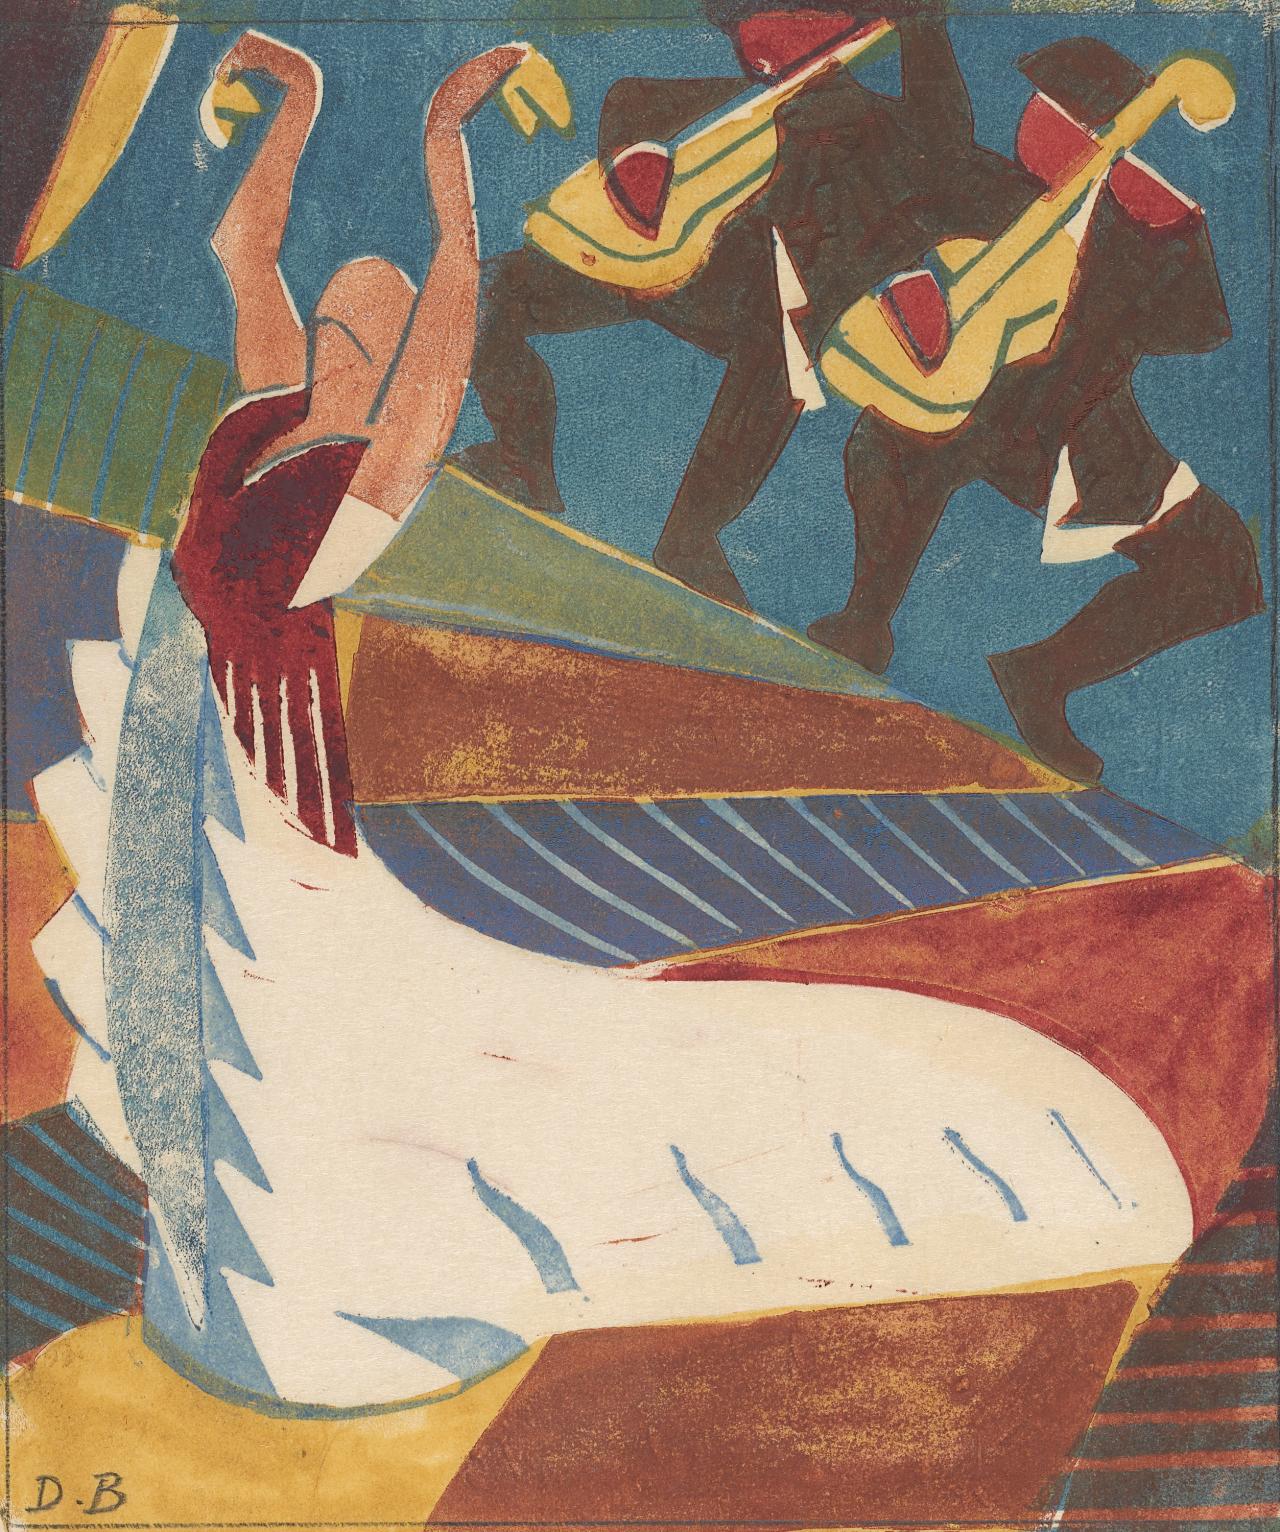 أرجنتينا (الراقصة الإسبانية) by Dorrit Black - 1929 - الأبعاد: 18.8 × 16 سم 